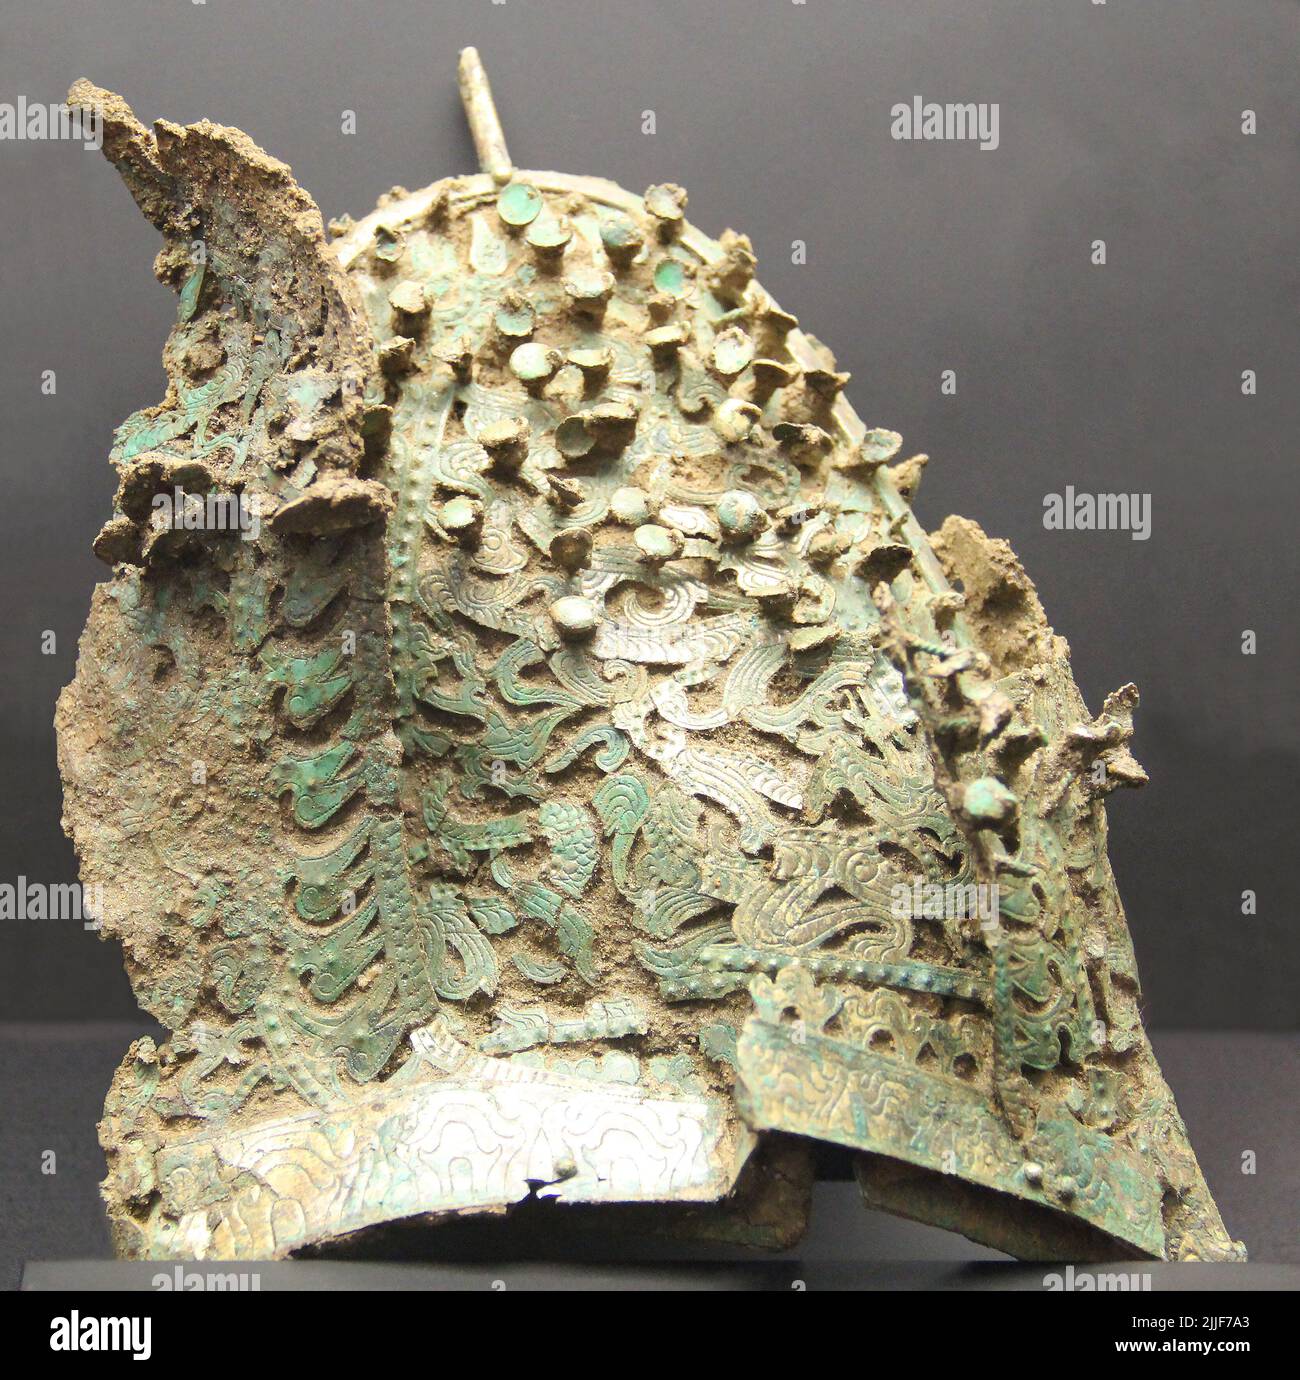 Corea del Sur: Gorra de bronce dorado, Reino Baekje, Período de los Tres Reinos (18 AC - 668 EC), Museo Nacional de Corea, Seúl. Baekje/Paekche fue uno de los tres Reinos de Corea, junto a Goguryeo y Silla. Situado en el suroeste de Corea, el reino fue ensuciado por Onjo, tercer hijo del legendario fundador de Goguryeo, Jumong, en Wiryeseong (hoy en día sur de Seúl). Baekje a menudo luchó y se alió con los otros reinos, y estaba en su poder máximo en el siglo 4th, cuando controló la mayor parte de la península occidental y tal vez incluso territorios en China como en Liaoxi. Era una pow de mar significativa Foto de stock